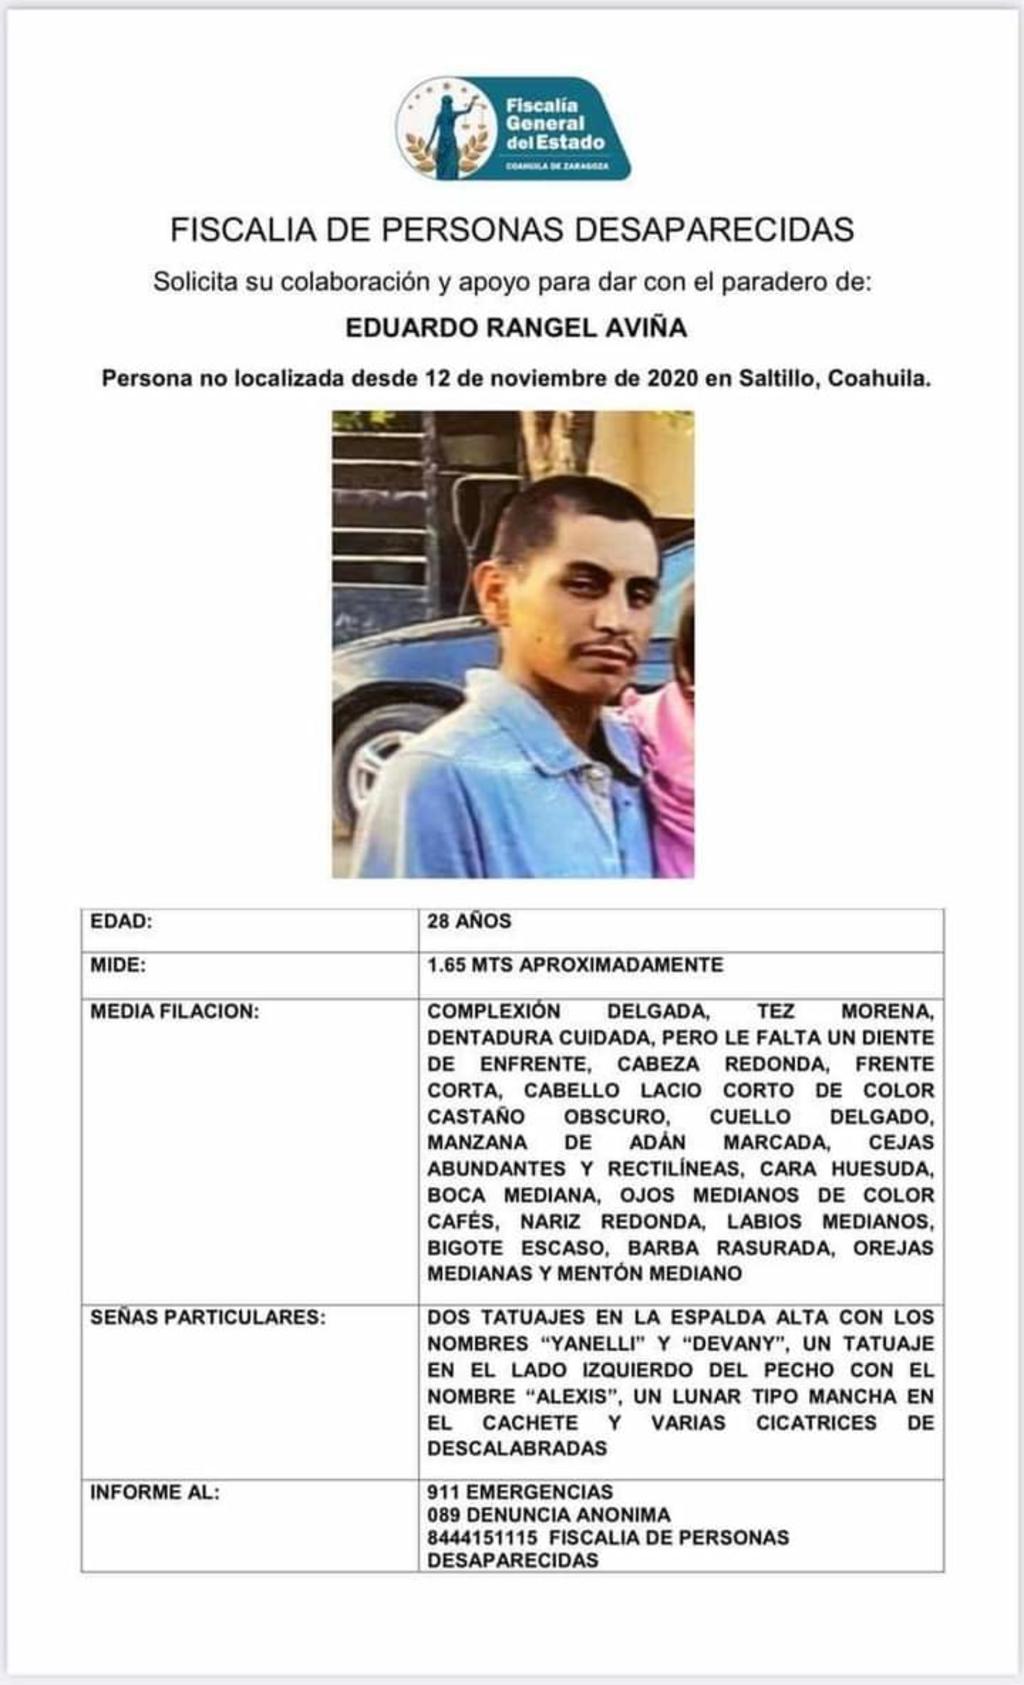 Se encuentra desaparecido desde el pasado 12 de noviembre del año 2020, no obstante, fue apenas el pasado fin de semana que fue denunciado por sus familiares y activada la alerta.